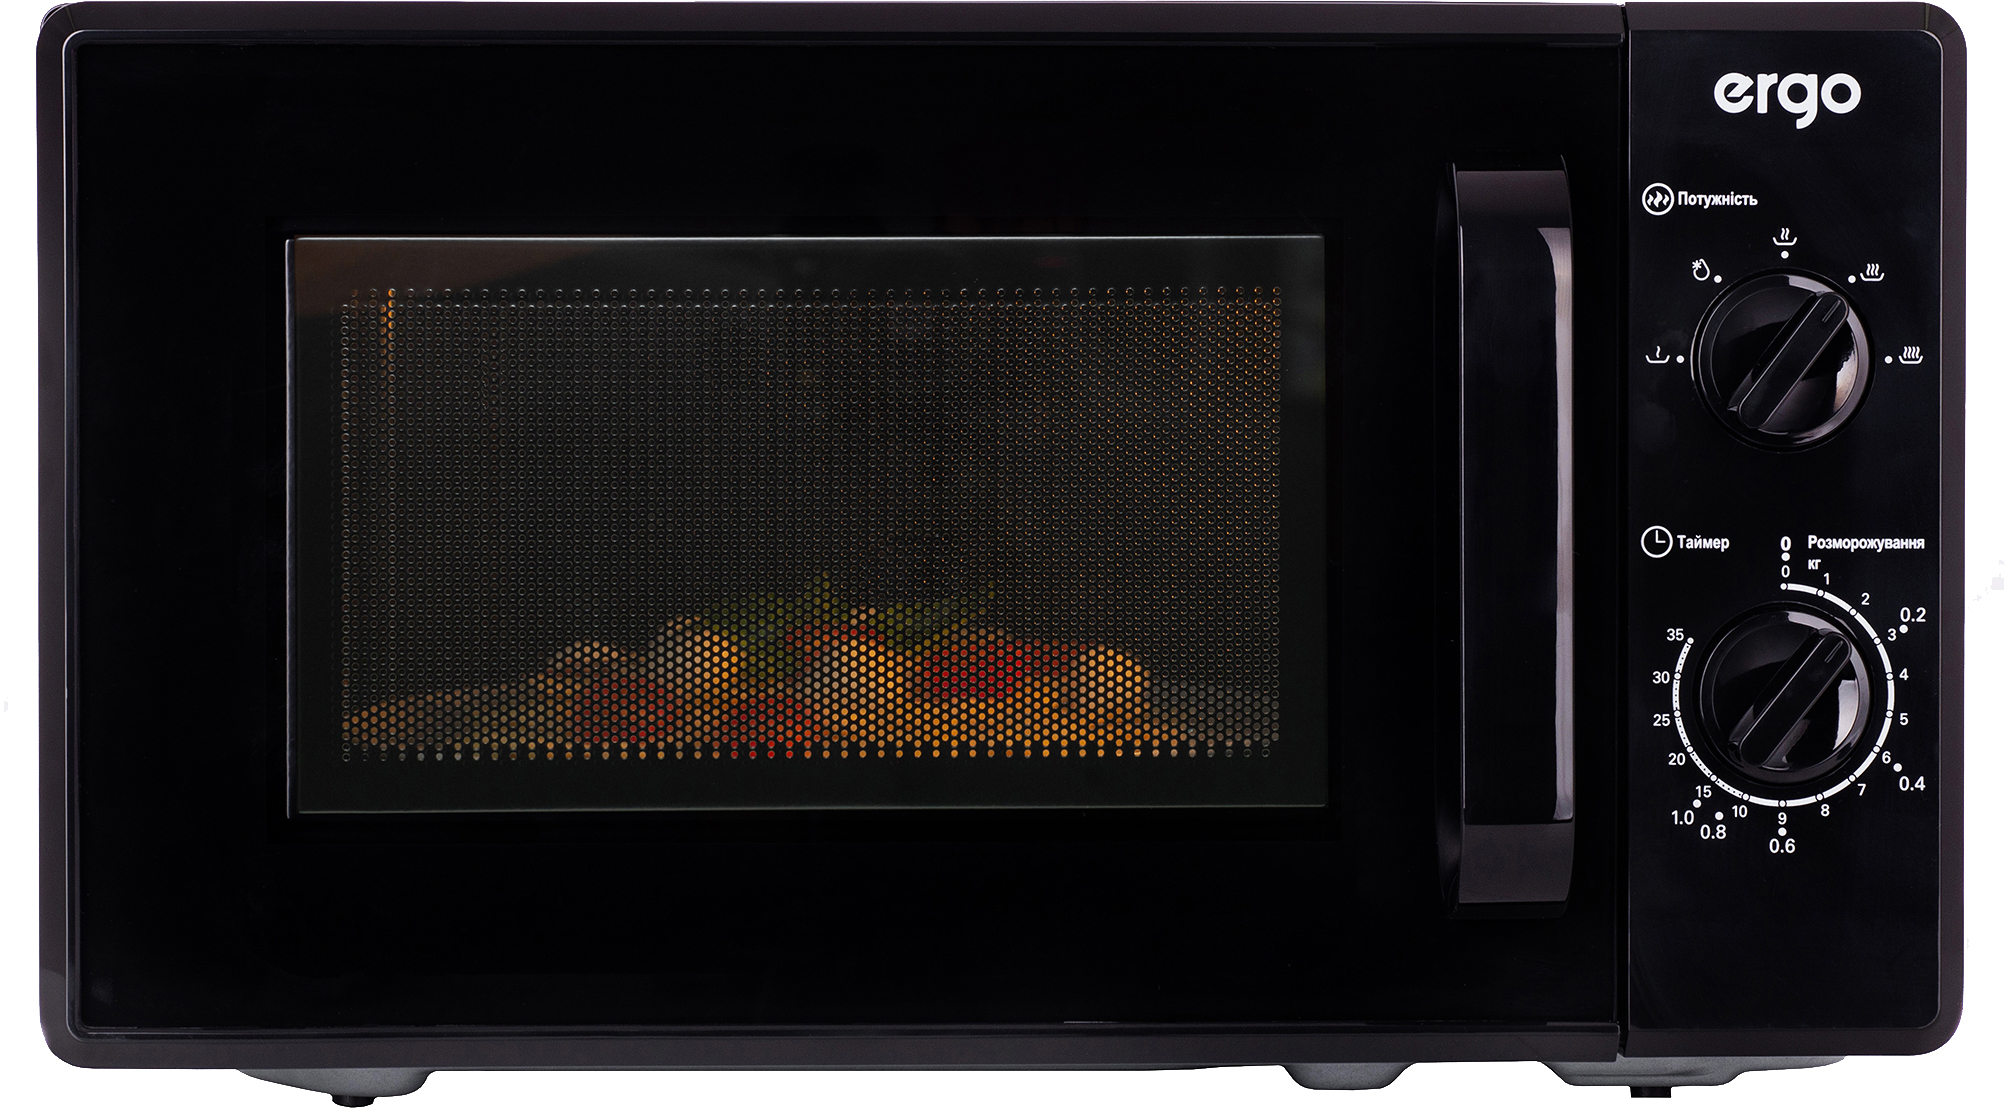 Микроволновая печь Ergo EM-2060 внешний вид - фото 9